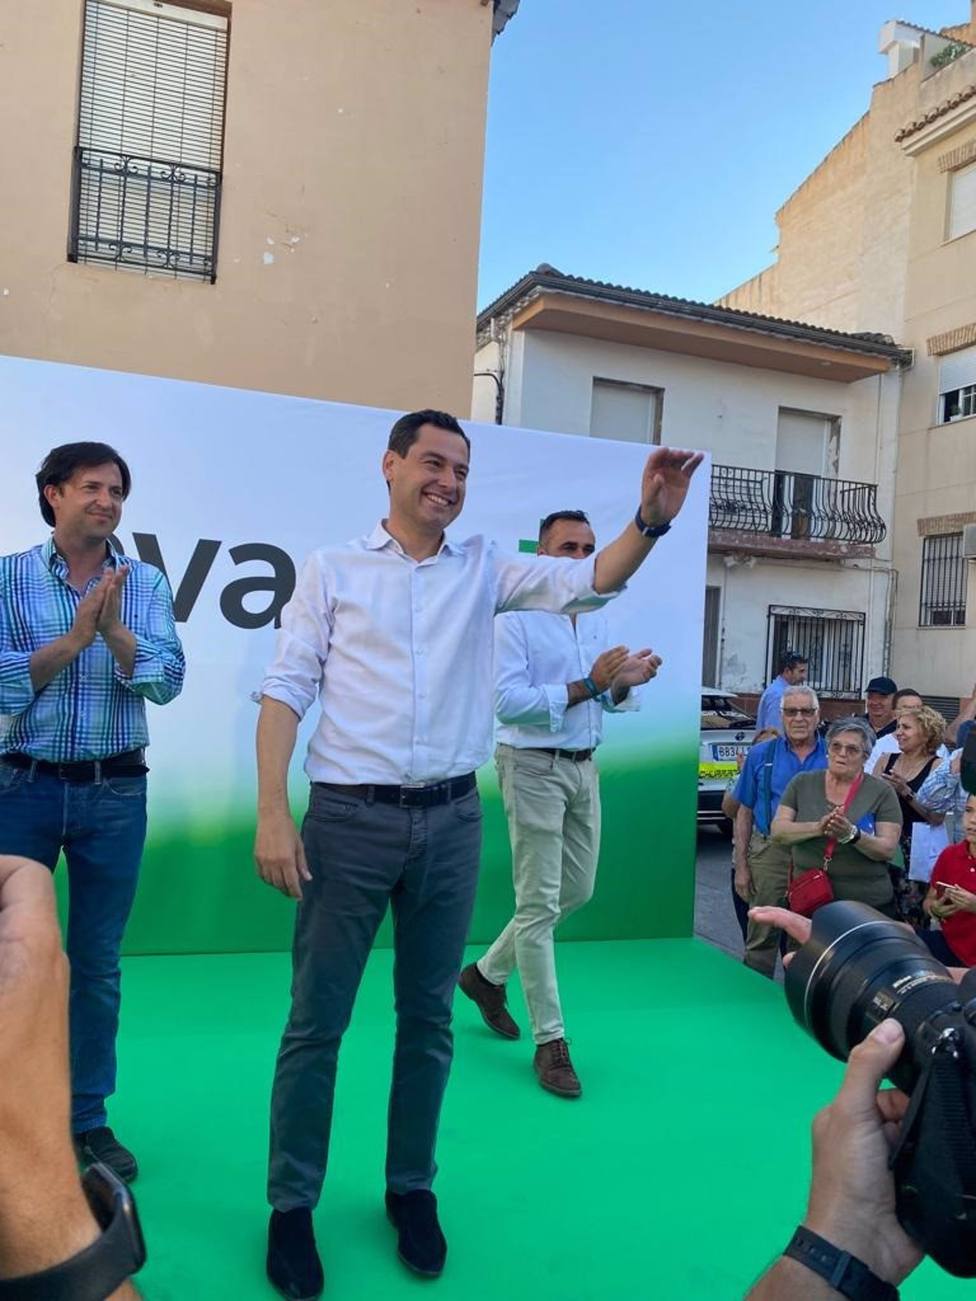 19J.-Granada.- Moreno expresa firme compromiso con la ampliaciÃ³n del metro y reprocha al Gobierno falta de apoyo